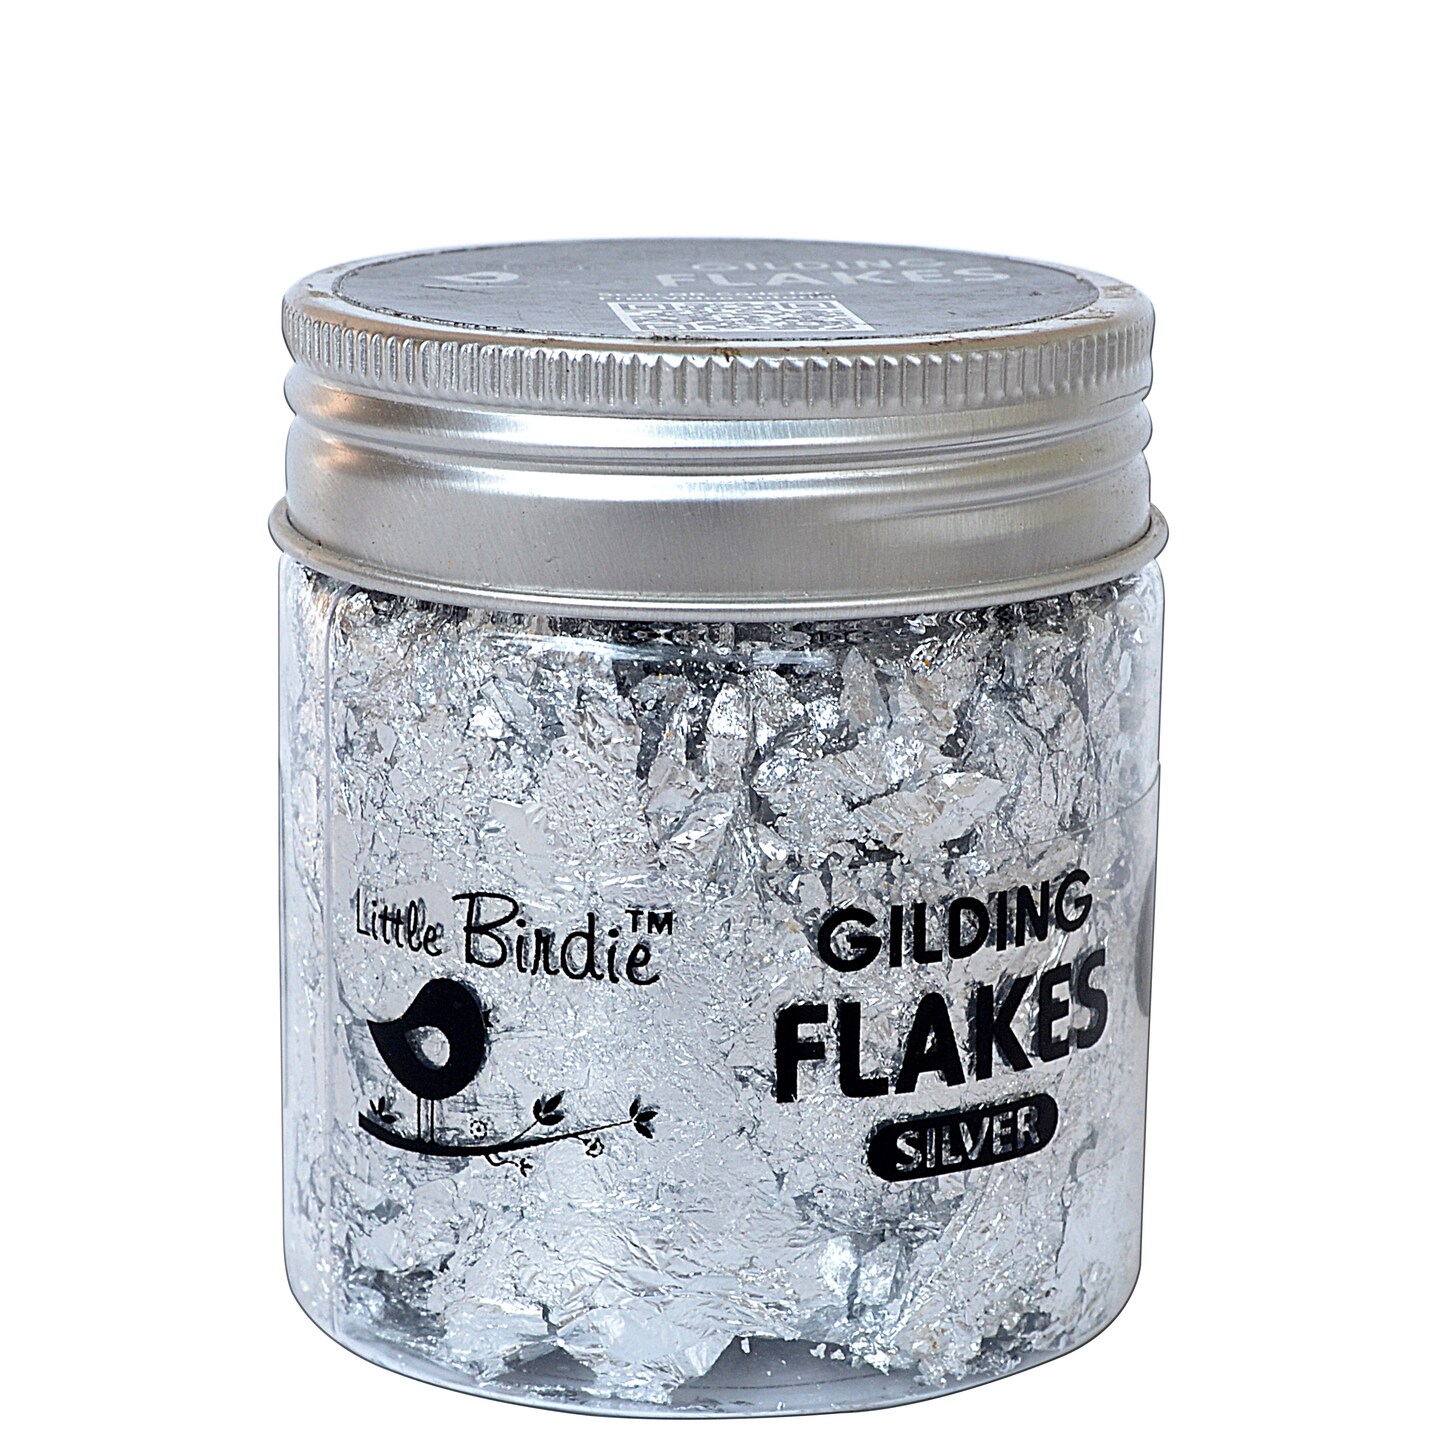 Little Birdie Gilding Flakes 15g-Silver